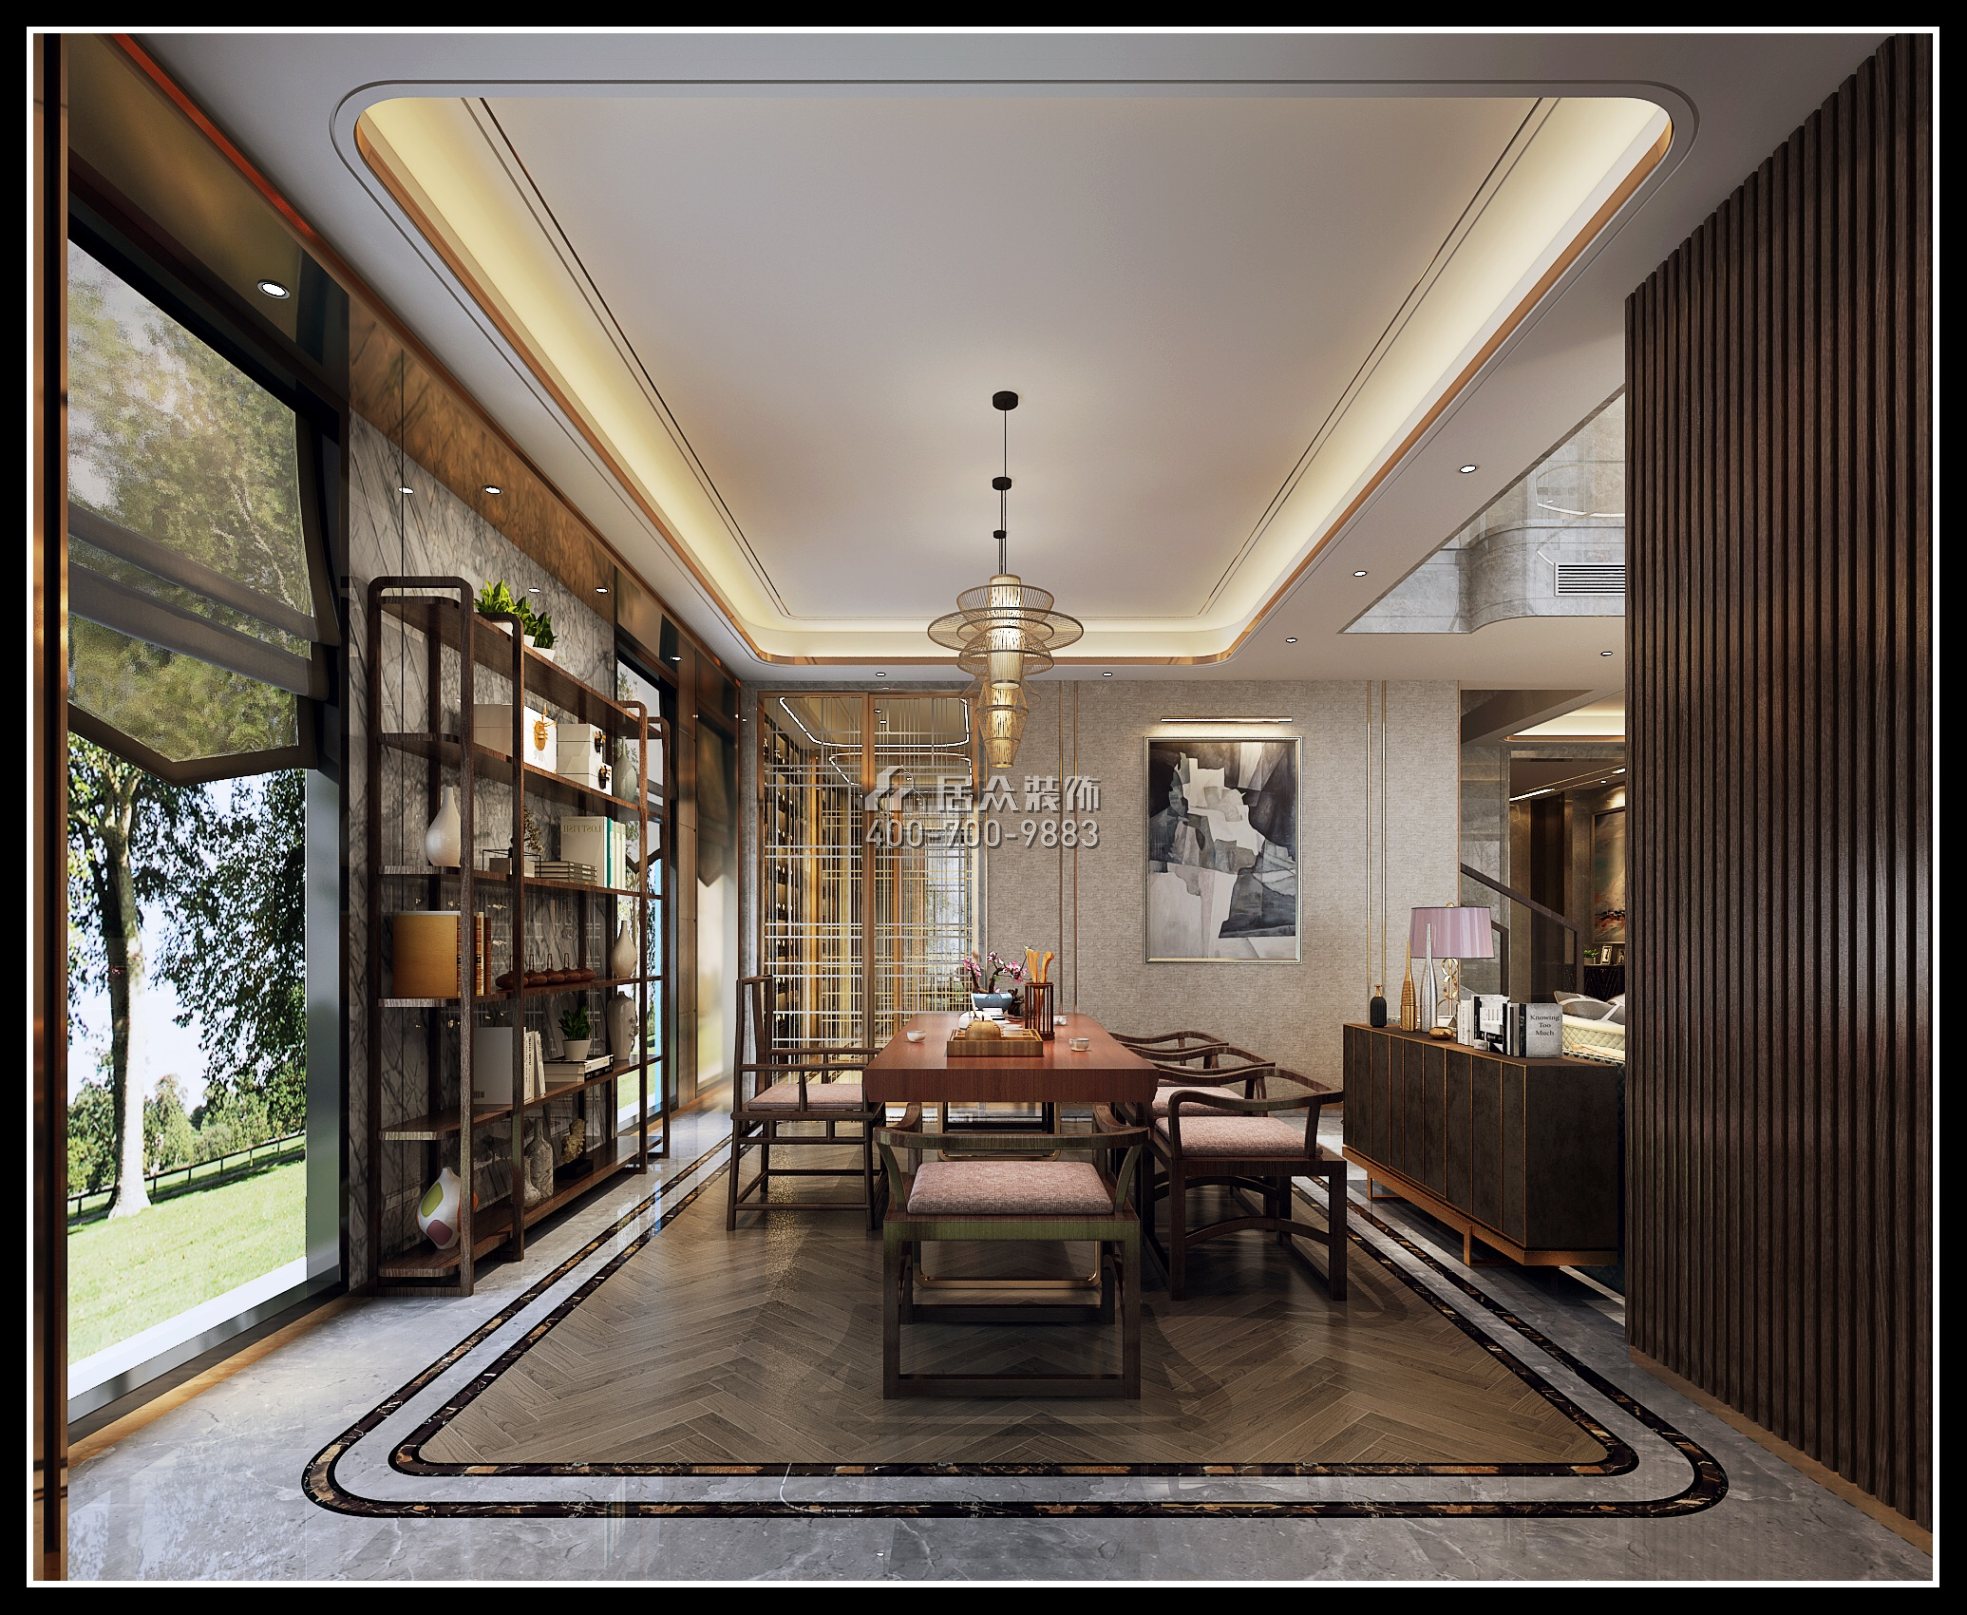 海逸豪庭御峰525平方米現代簡約風格別墅戶型茶室裝修效果圖